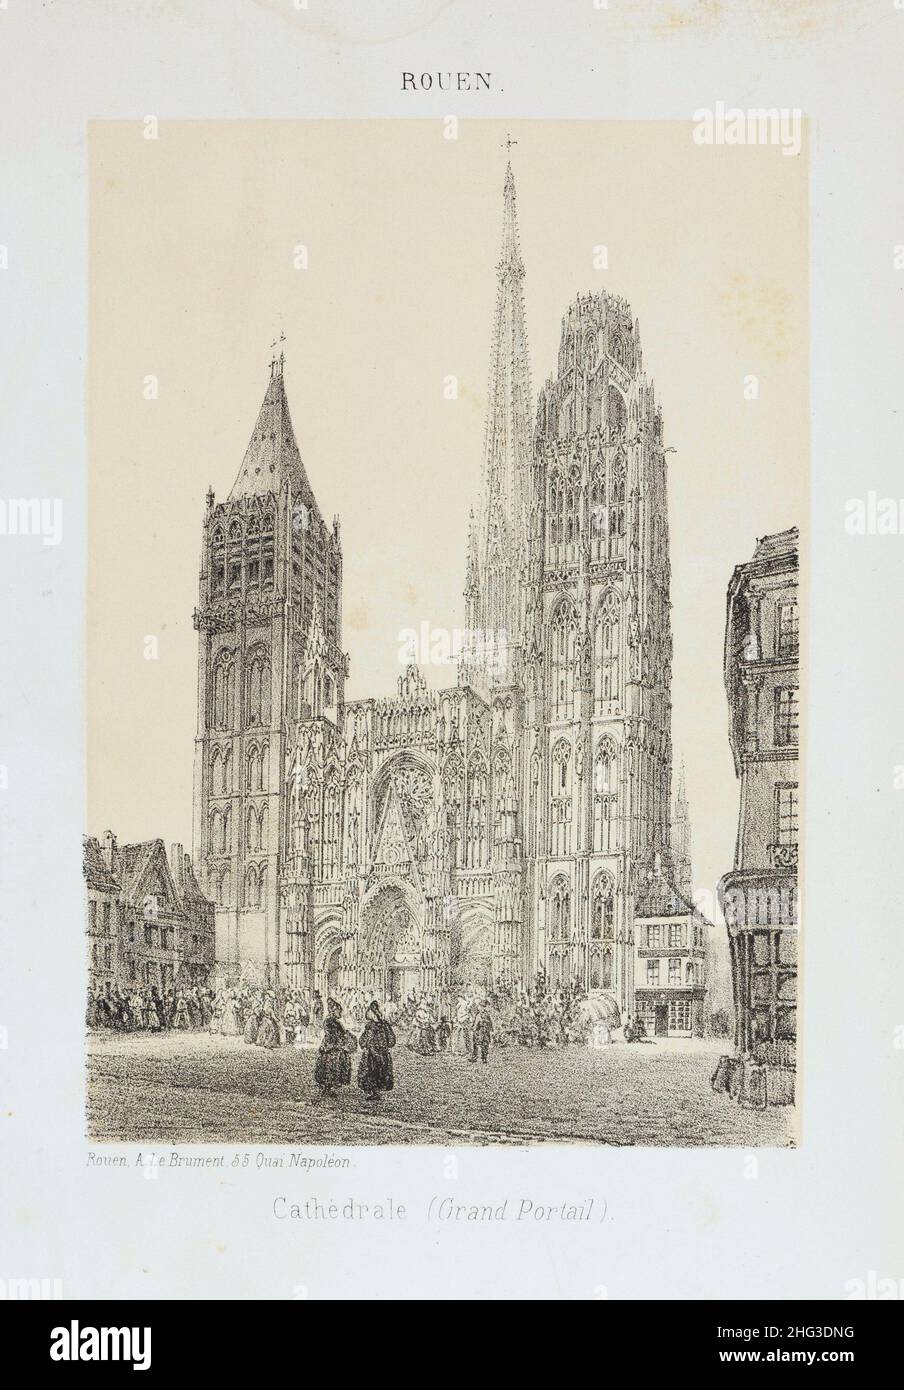 Lithographie mit Blick auf die Kathedrale von Rouen. 1876-1877 die Kathedrale von Rouen (französisch: Cathédrale primatiale Notre-Dame de l'Assomption de Rouen) ist eine römische Ca Stockfoto